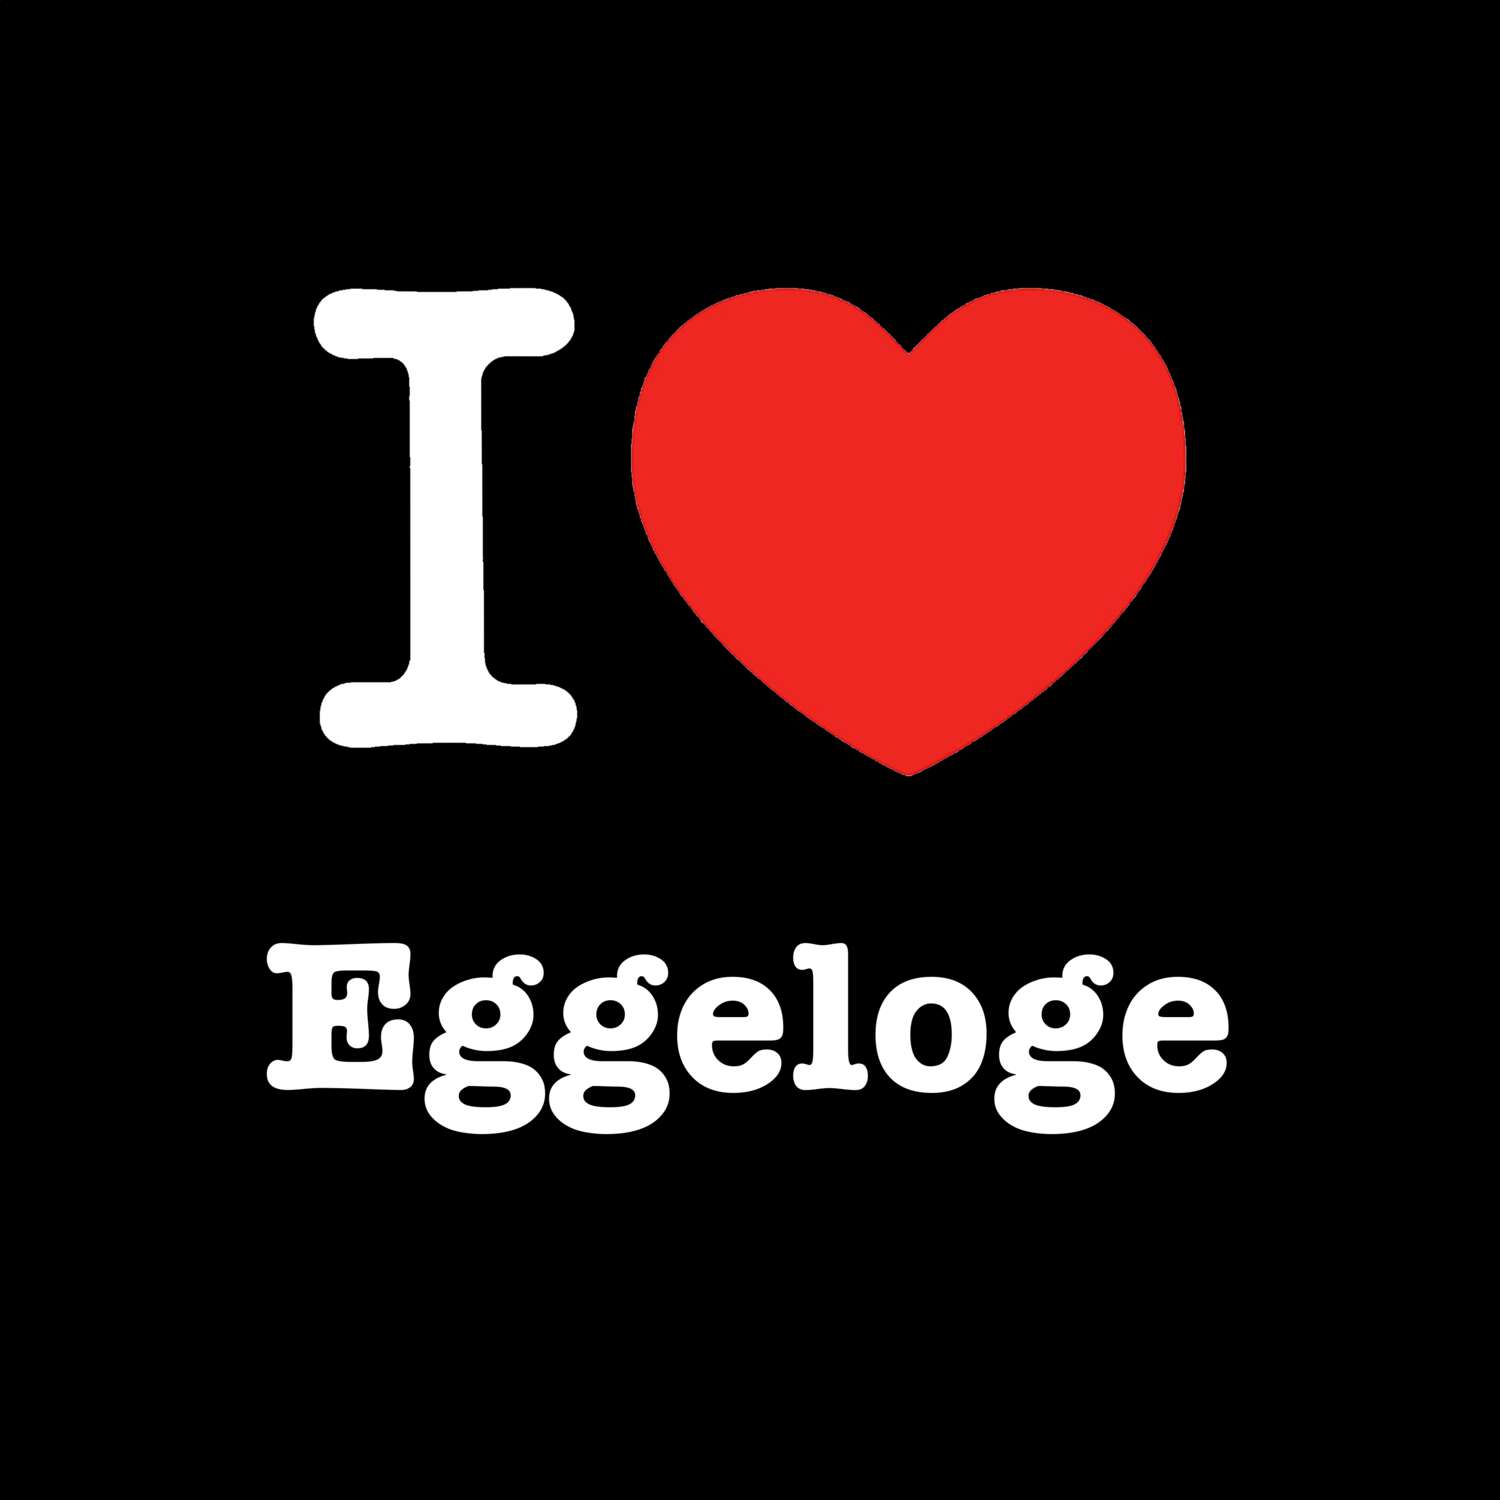 Eggeloge T-Shirt »I love«